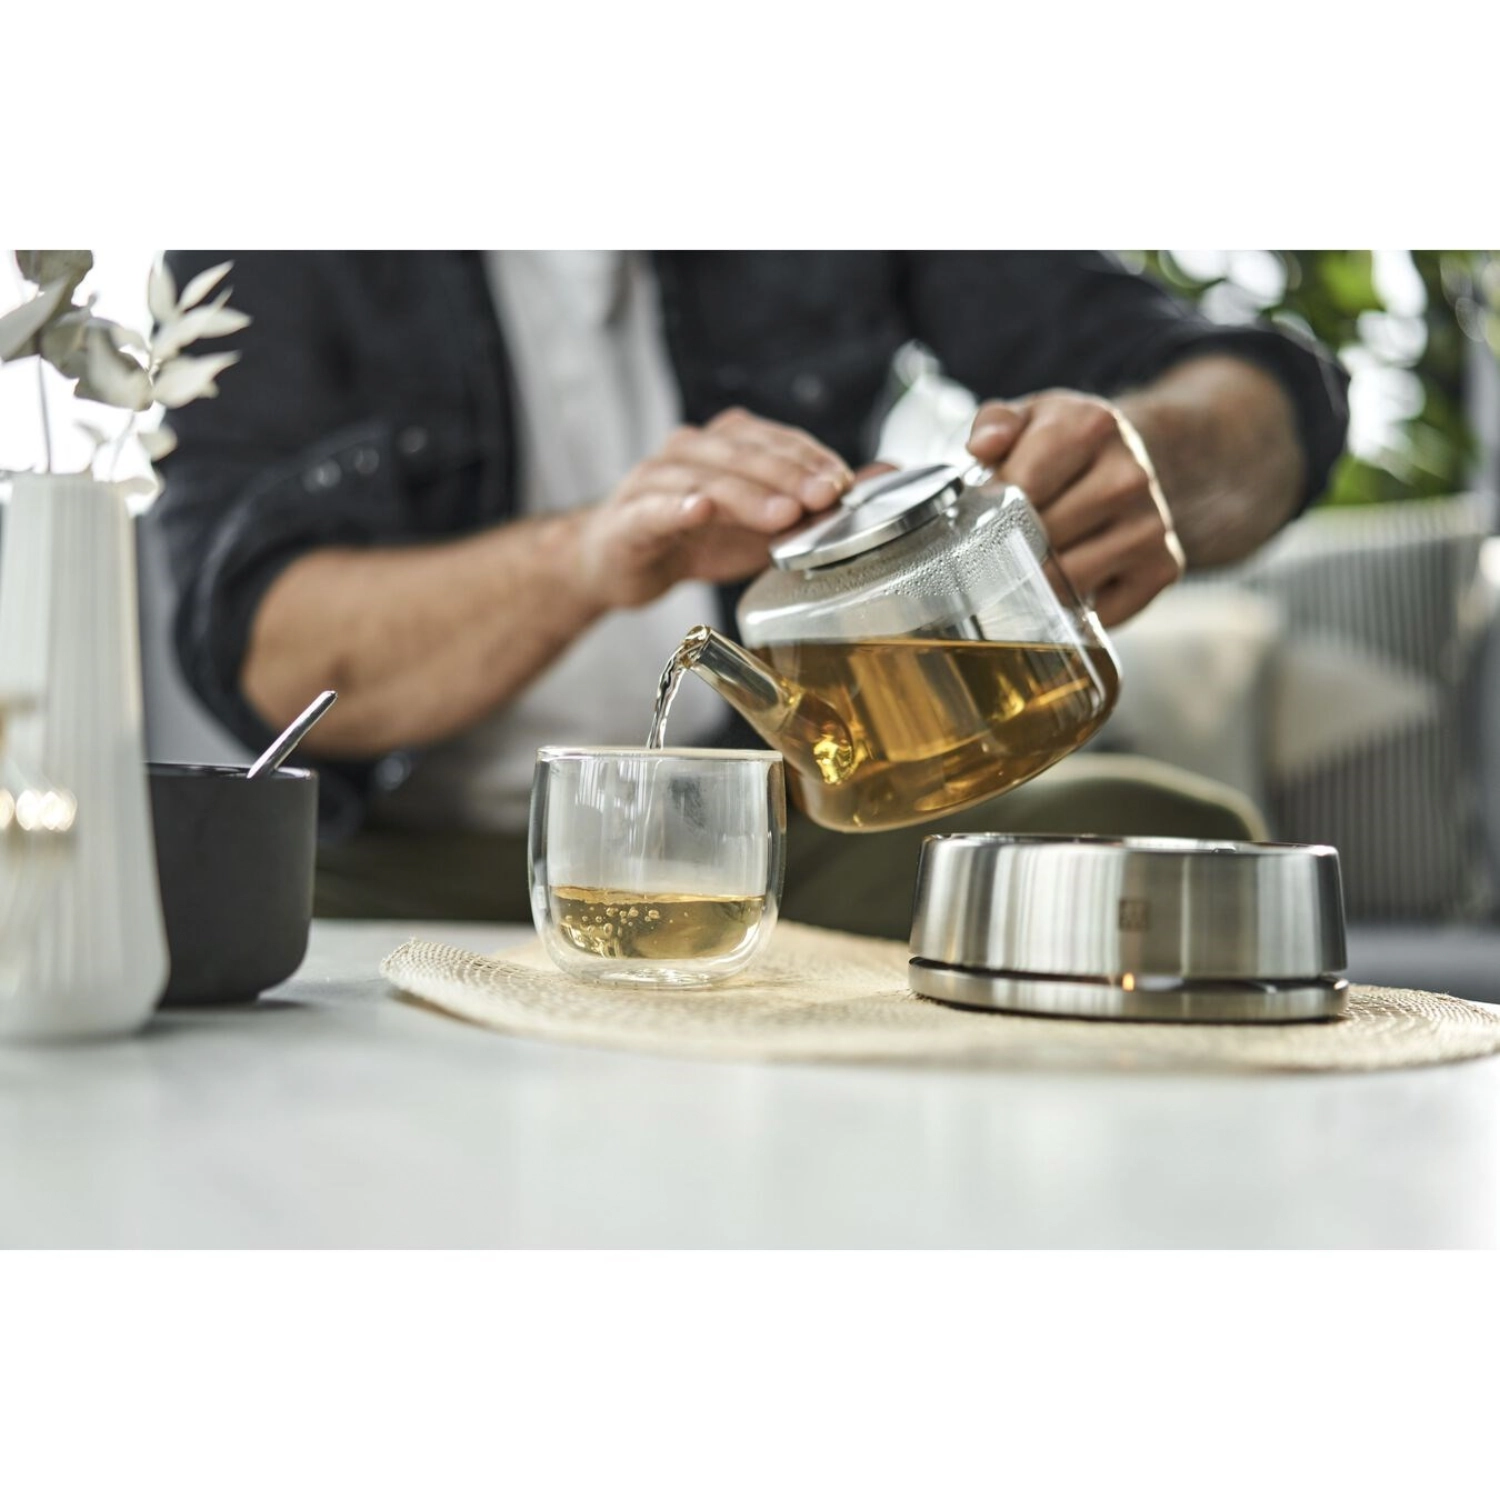 Sorrento théière 0.8l avec réchaud et passoire à thé